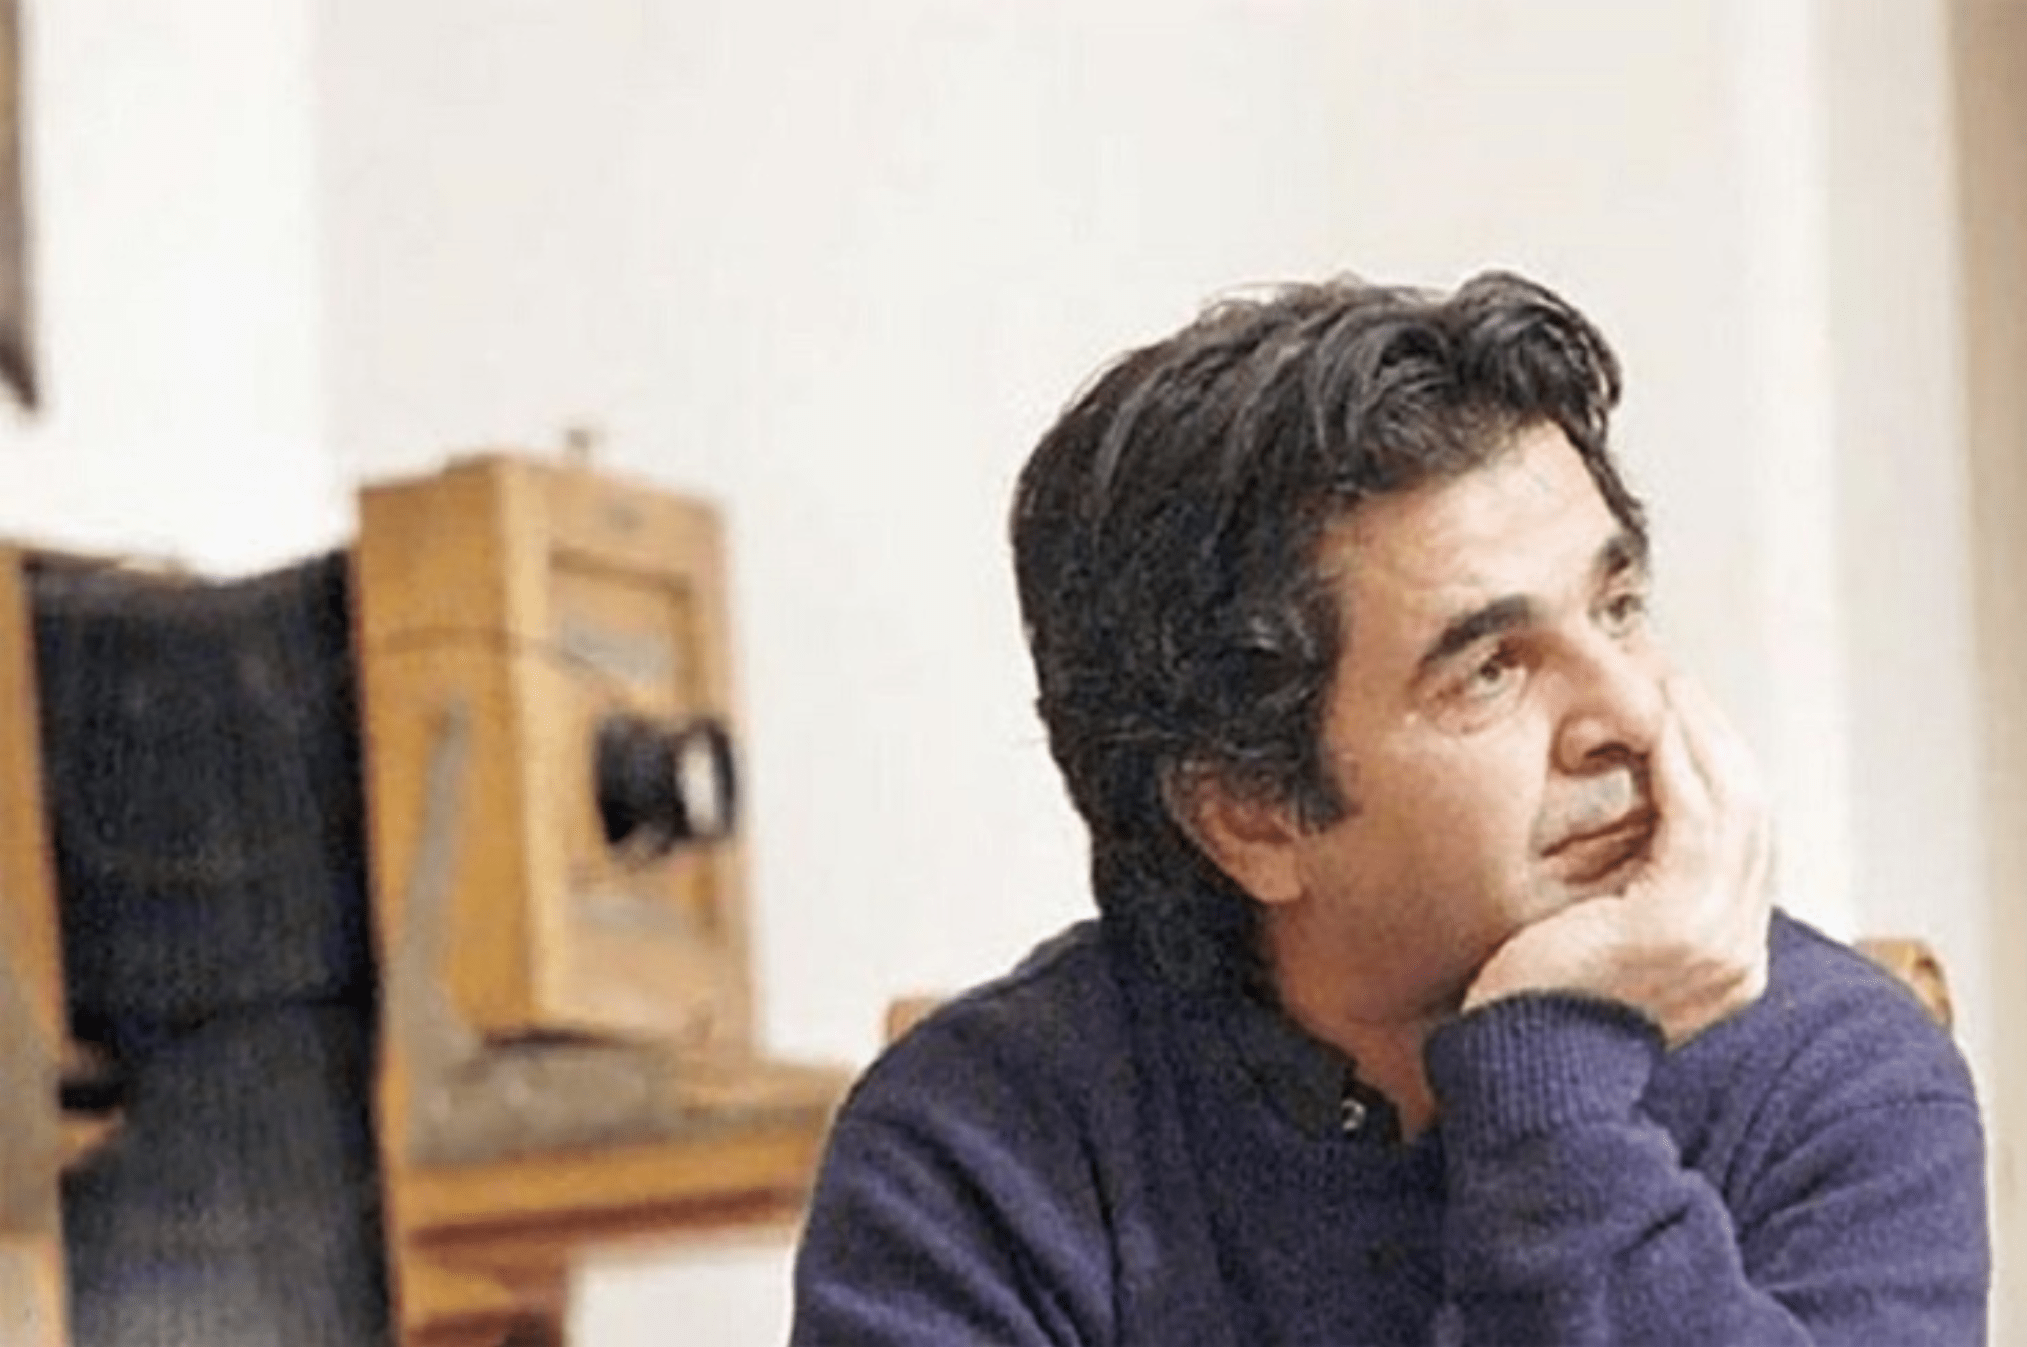 جعفر پناهی با ارسال نامه ای از عملکرد دولتهایی مانند ایران در قبال هنرمندان مستقل انتقاد کرد